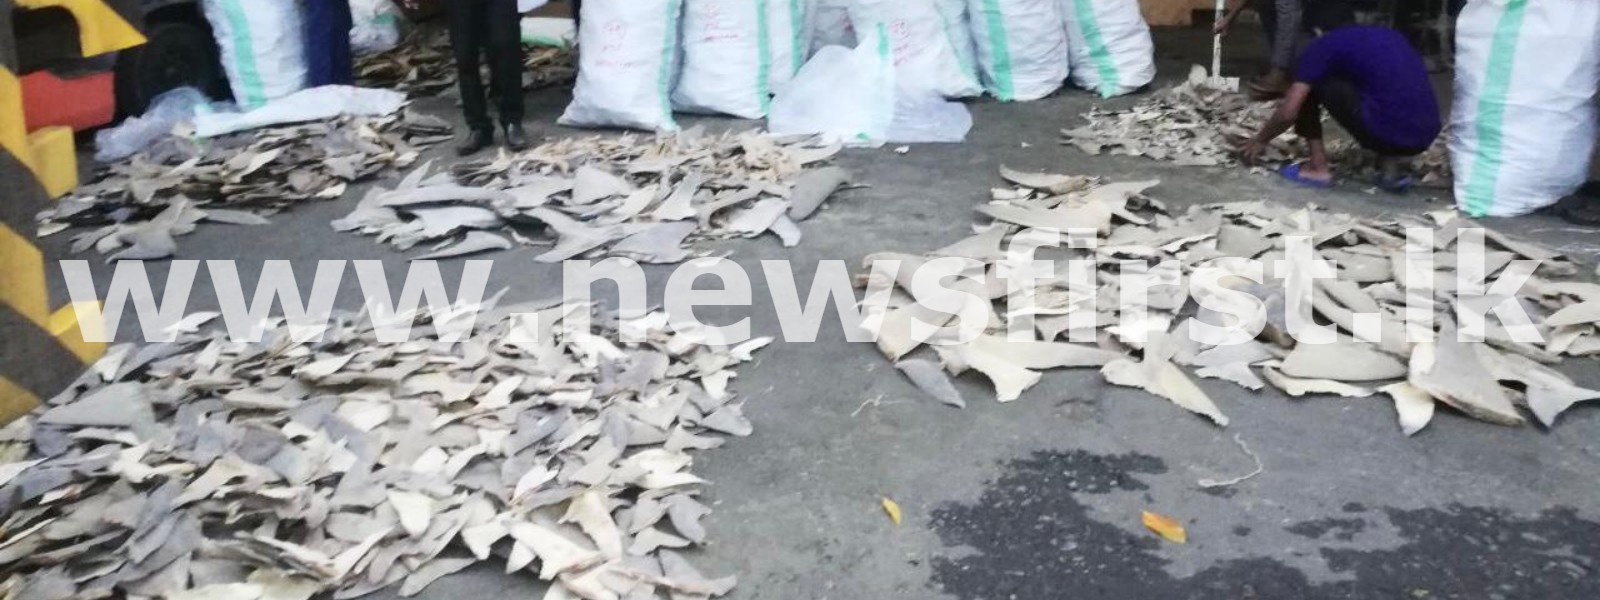 200 kg of dried fins of endangered sharks seized